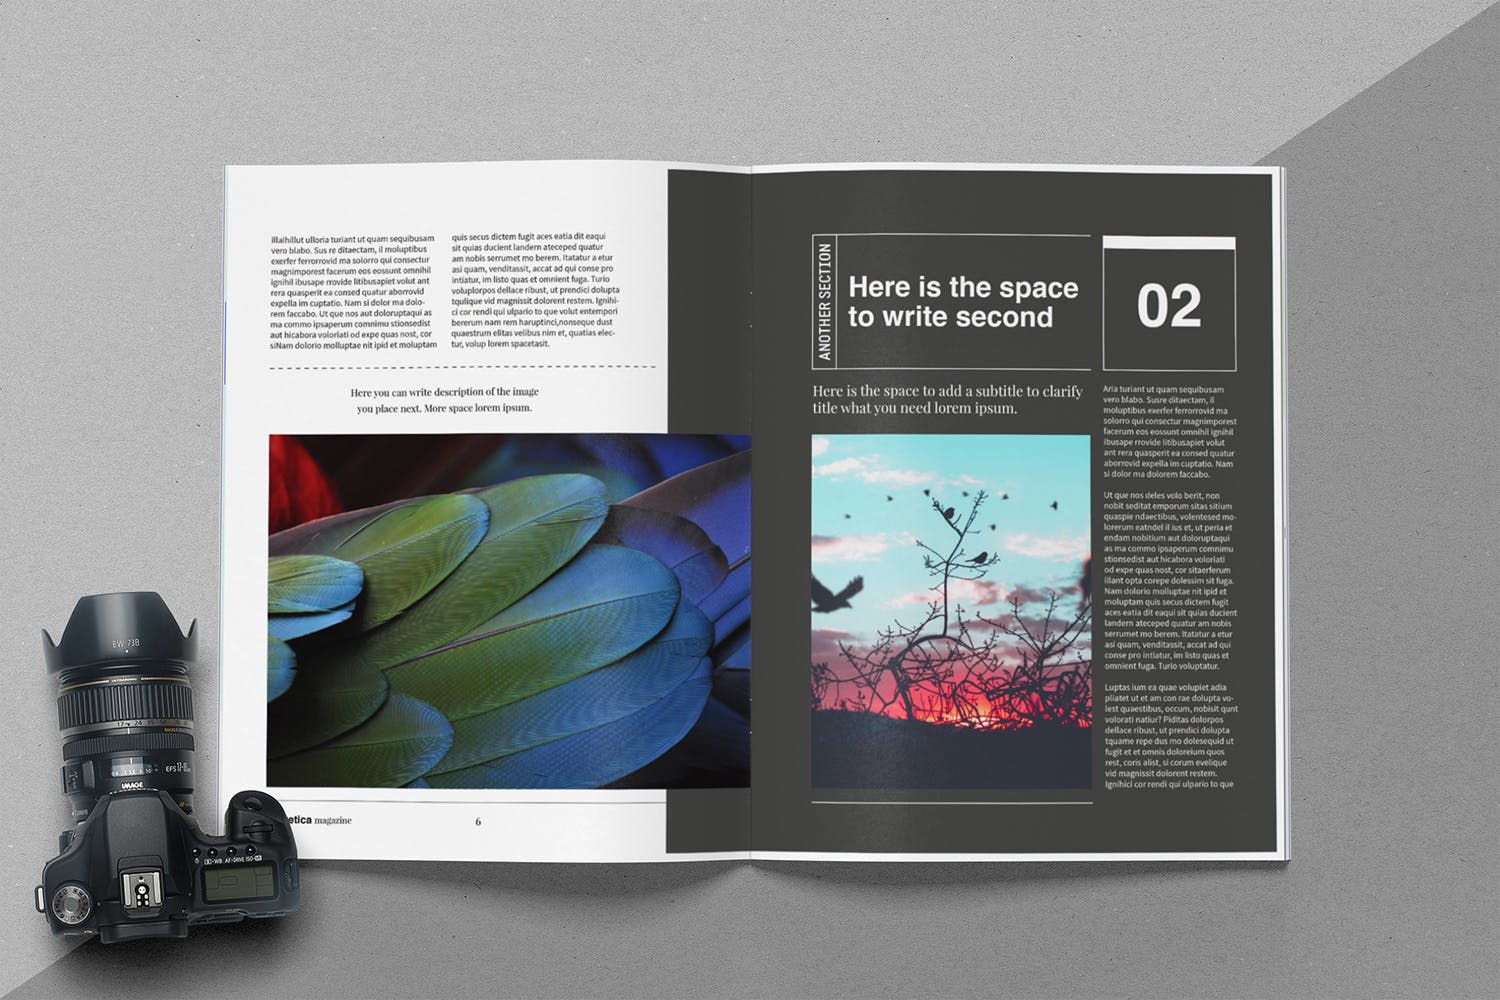 时尚行业产品评测杂志Indesign模板下载 Helvetica Magazine Indesign Template插图(4)